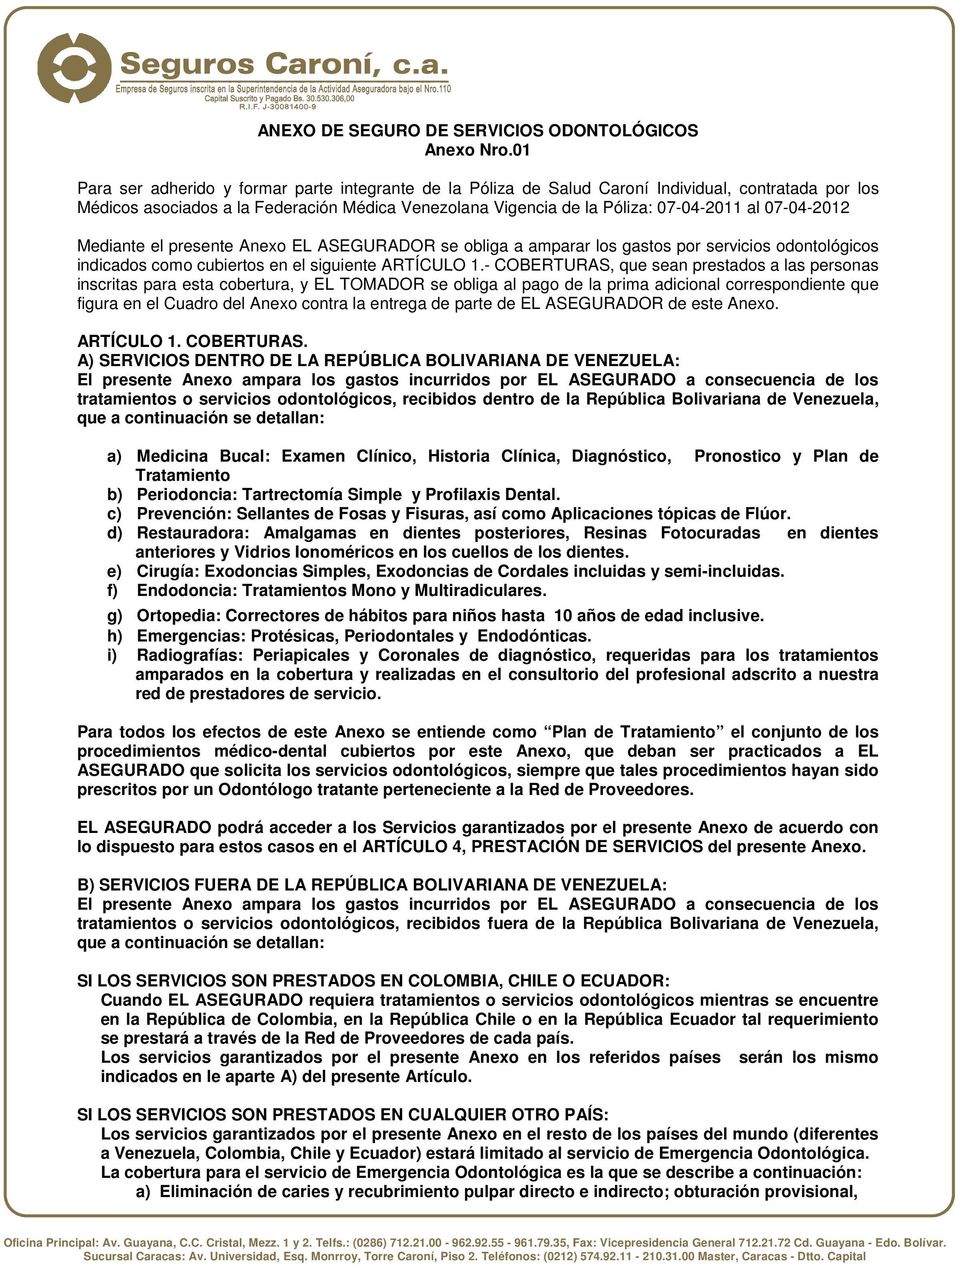 07-04-2012 Mediante el presente Anexo EL ASEGURADOR se obliga a amparar los gastos por servicios odontológicos indicados como cubiertos en el siguiente ARTÍCULO 1.